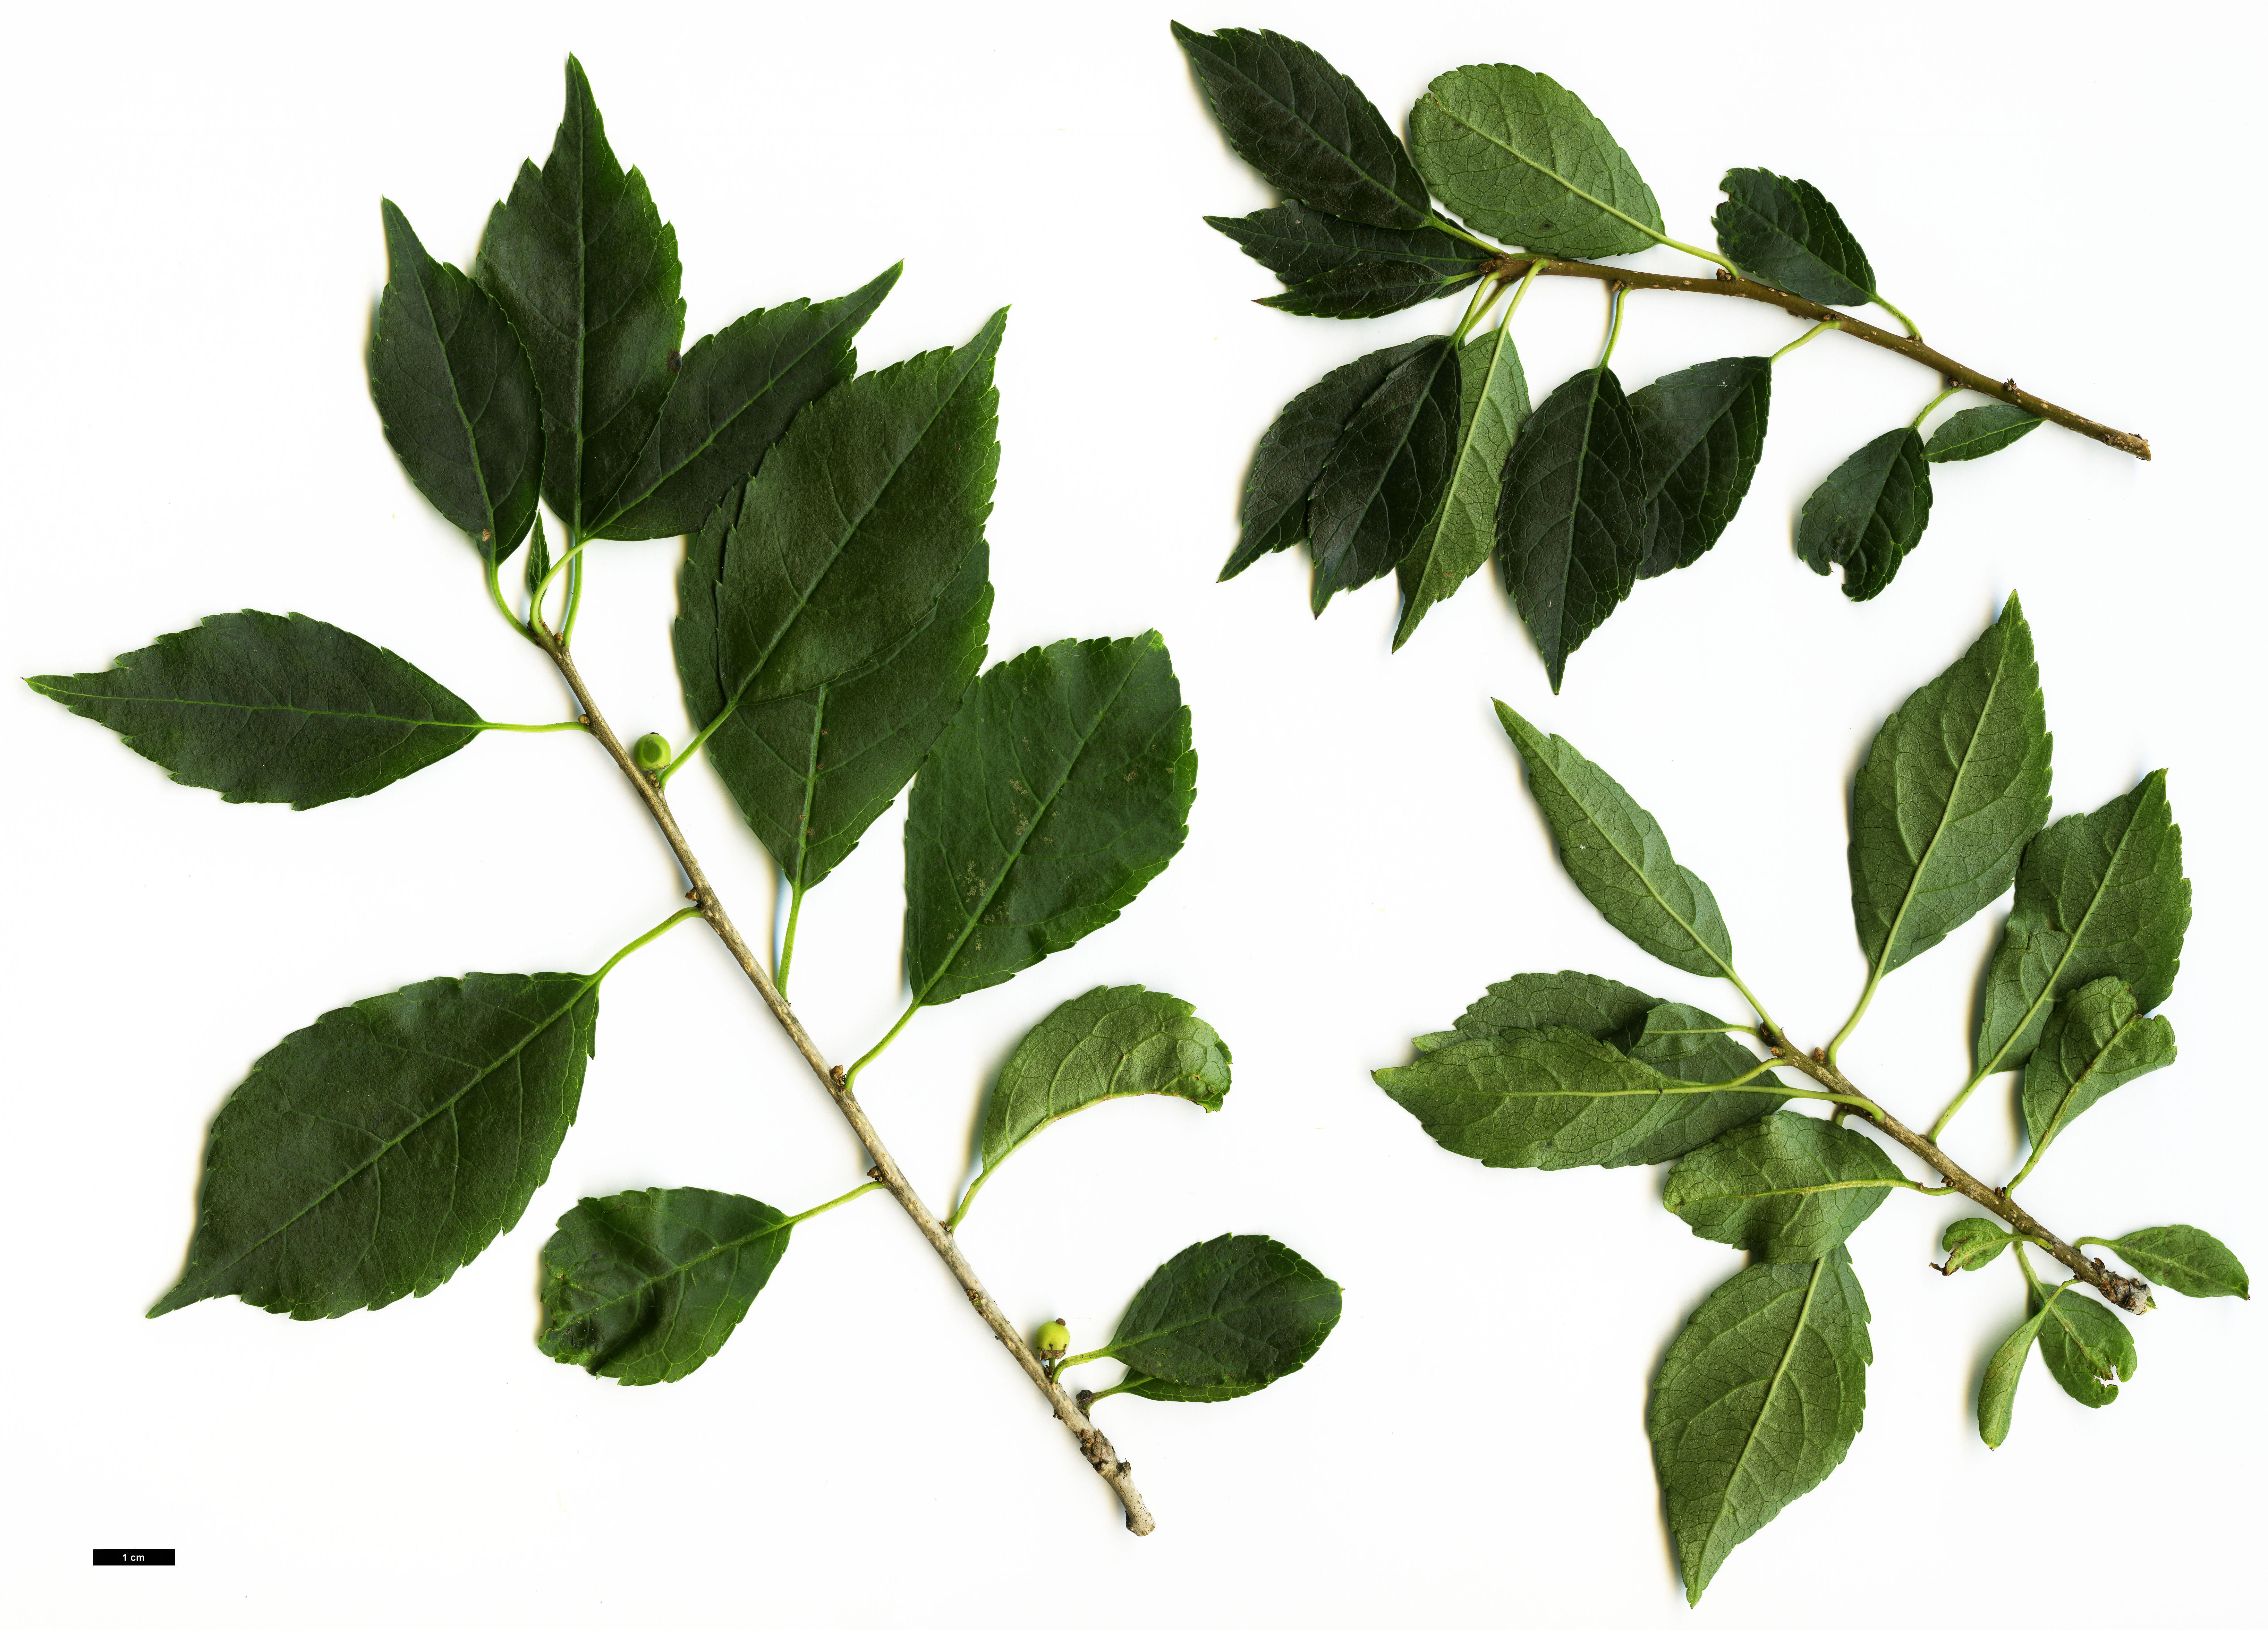 High resolution image: Family: Aquifoliaceae - Genus: Ilex - Taxon: verticillata